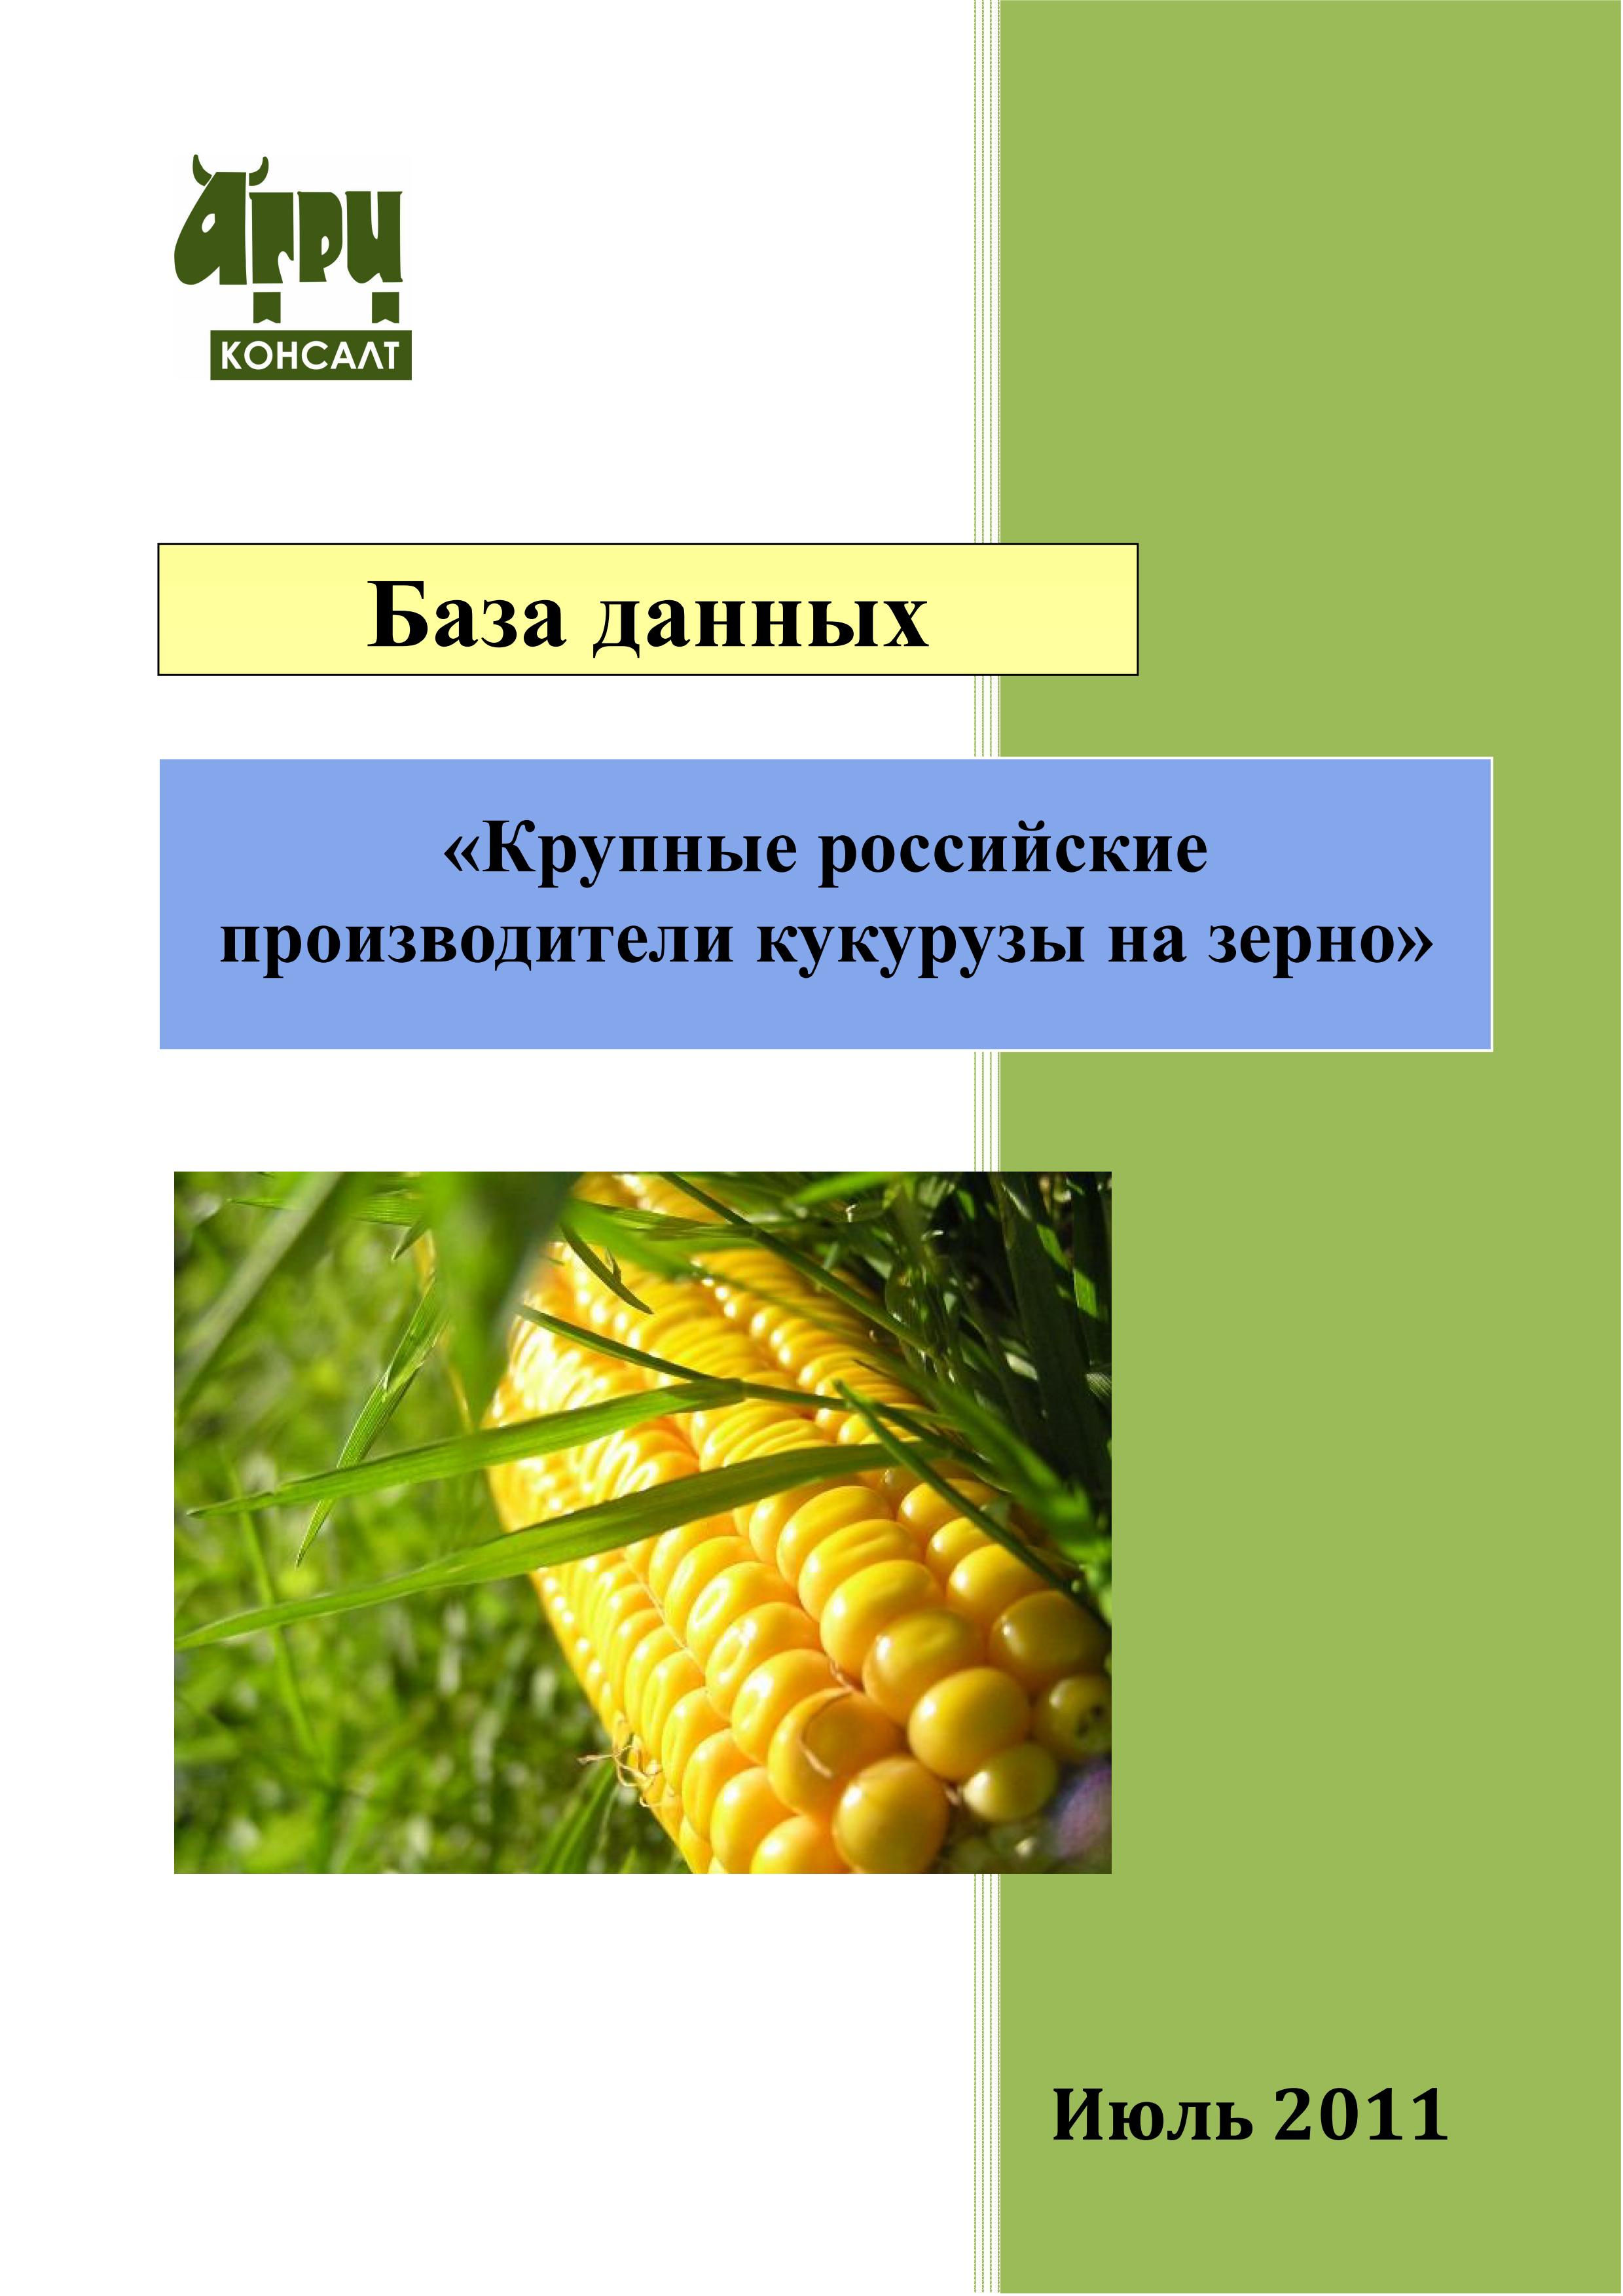 Крупные производители кукурузы. Производители кукурузы в России. Кукуруза производитель. Крупнейшие производители кукурузы